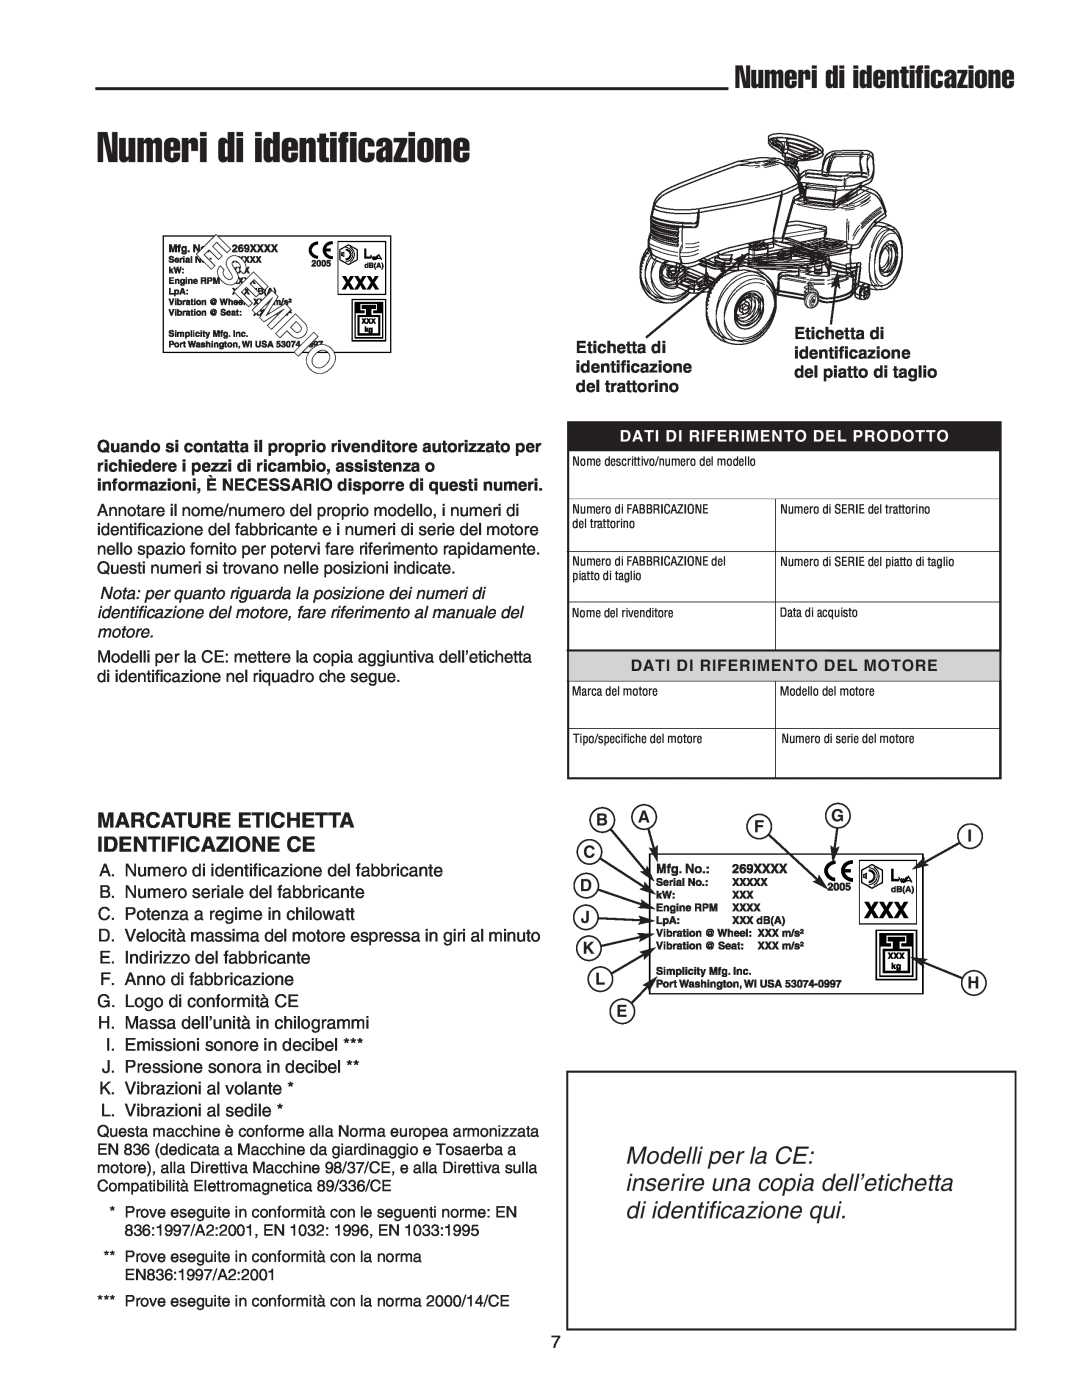 Briggs & Stratton Printer Numeri di identificazione, Marcature Etichetta Identificazione Ce, Modelli per la CE 